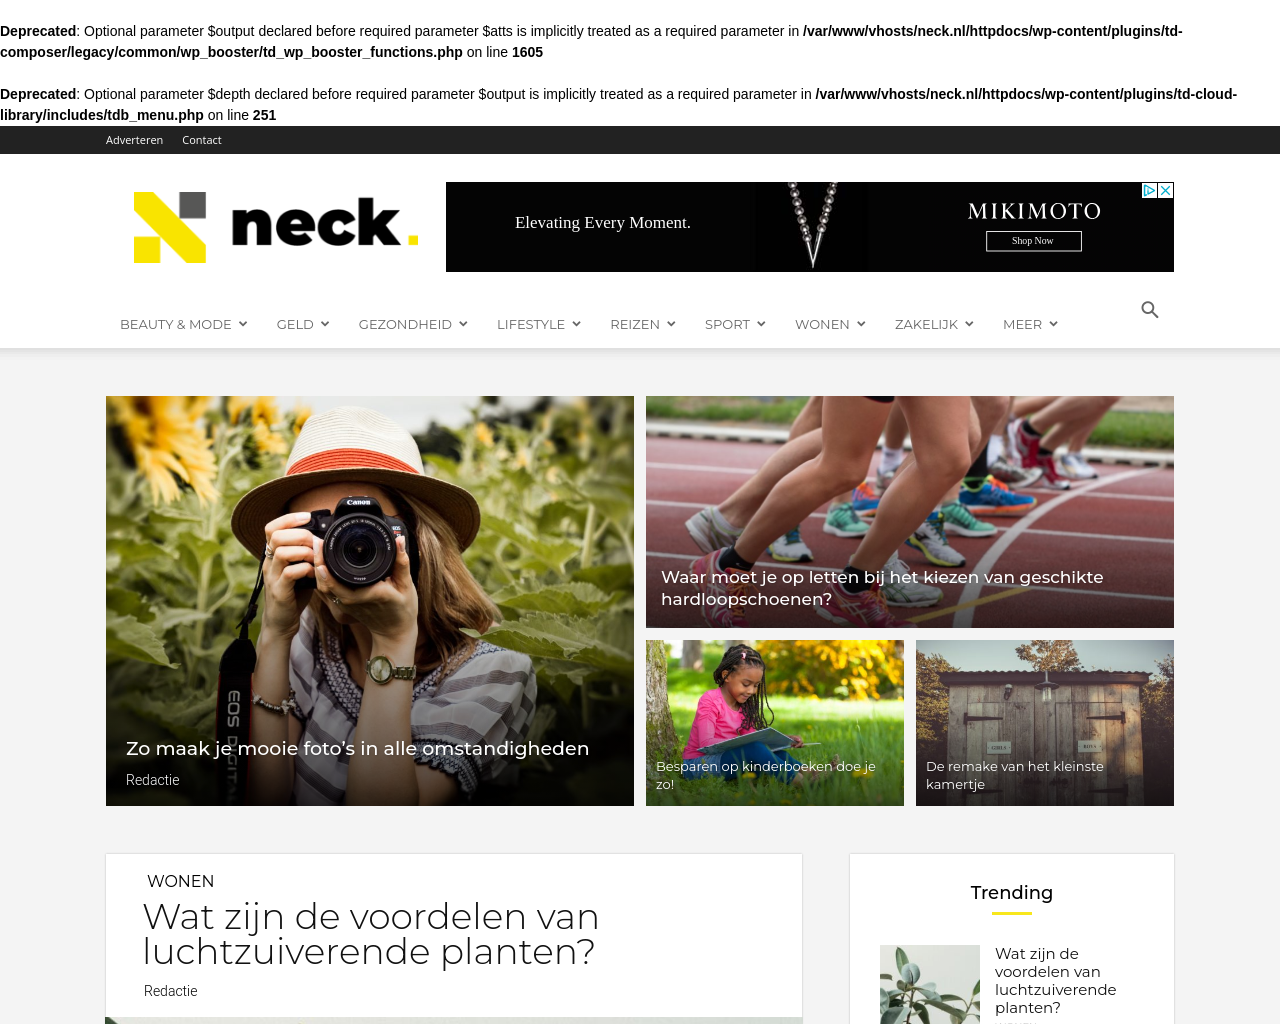 neck.nl